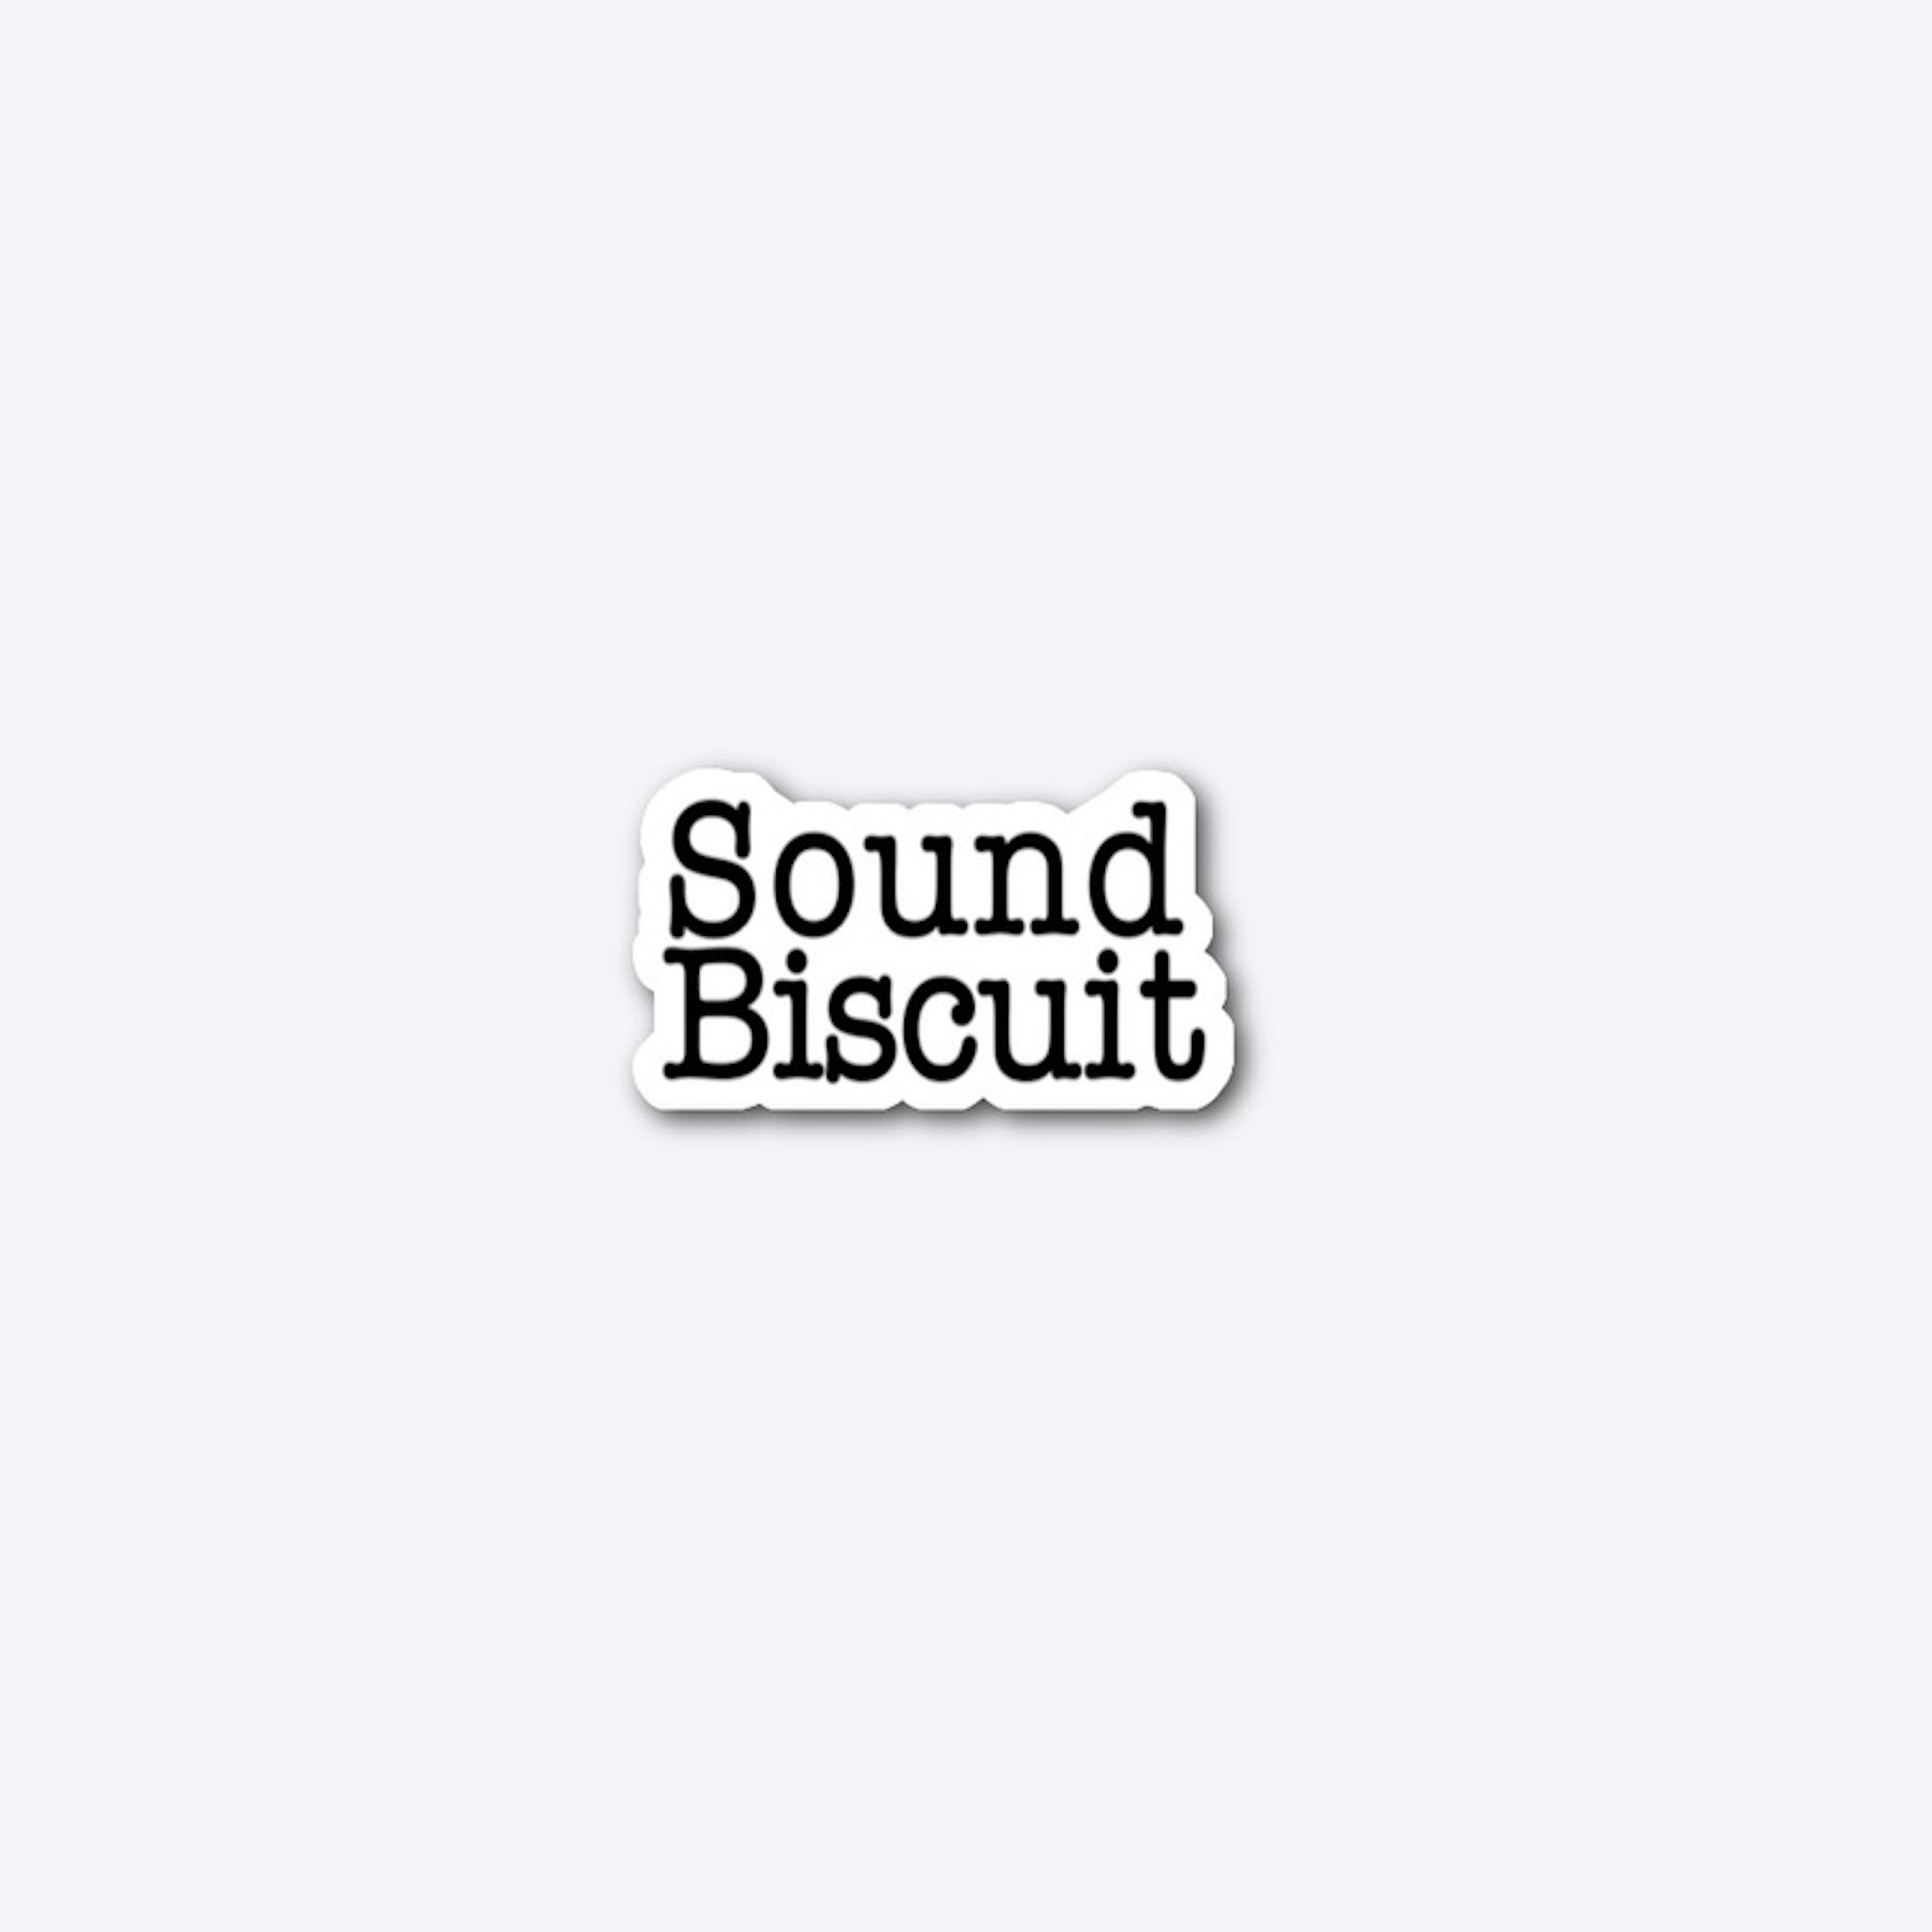 Sound Biscuit Accessories